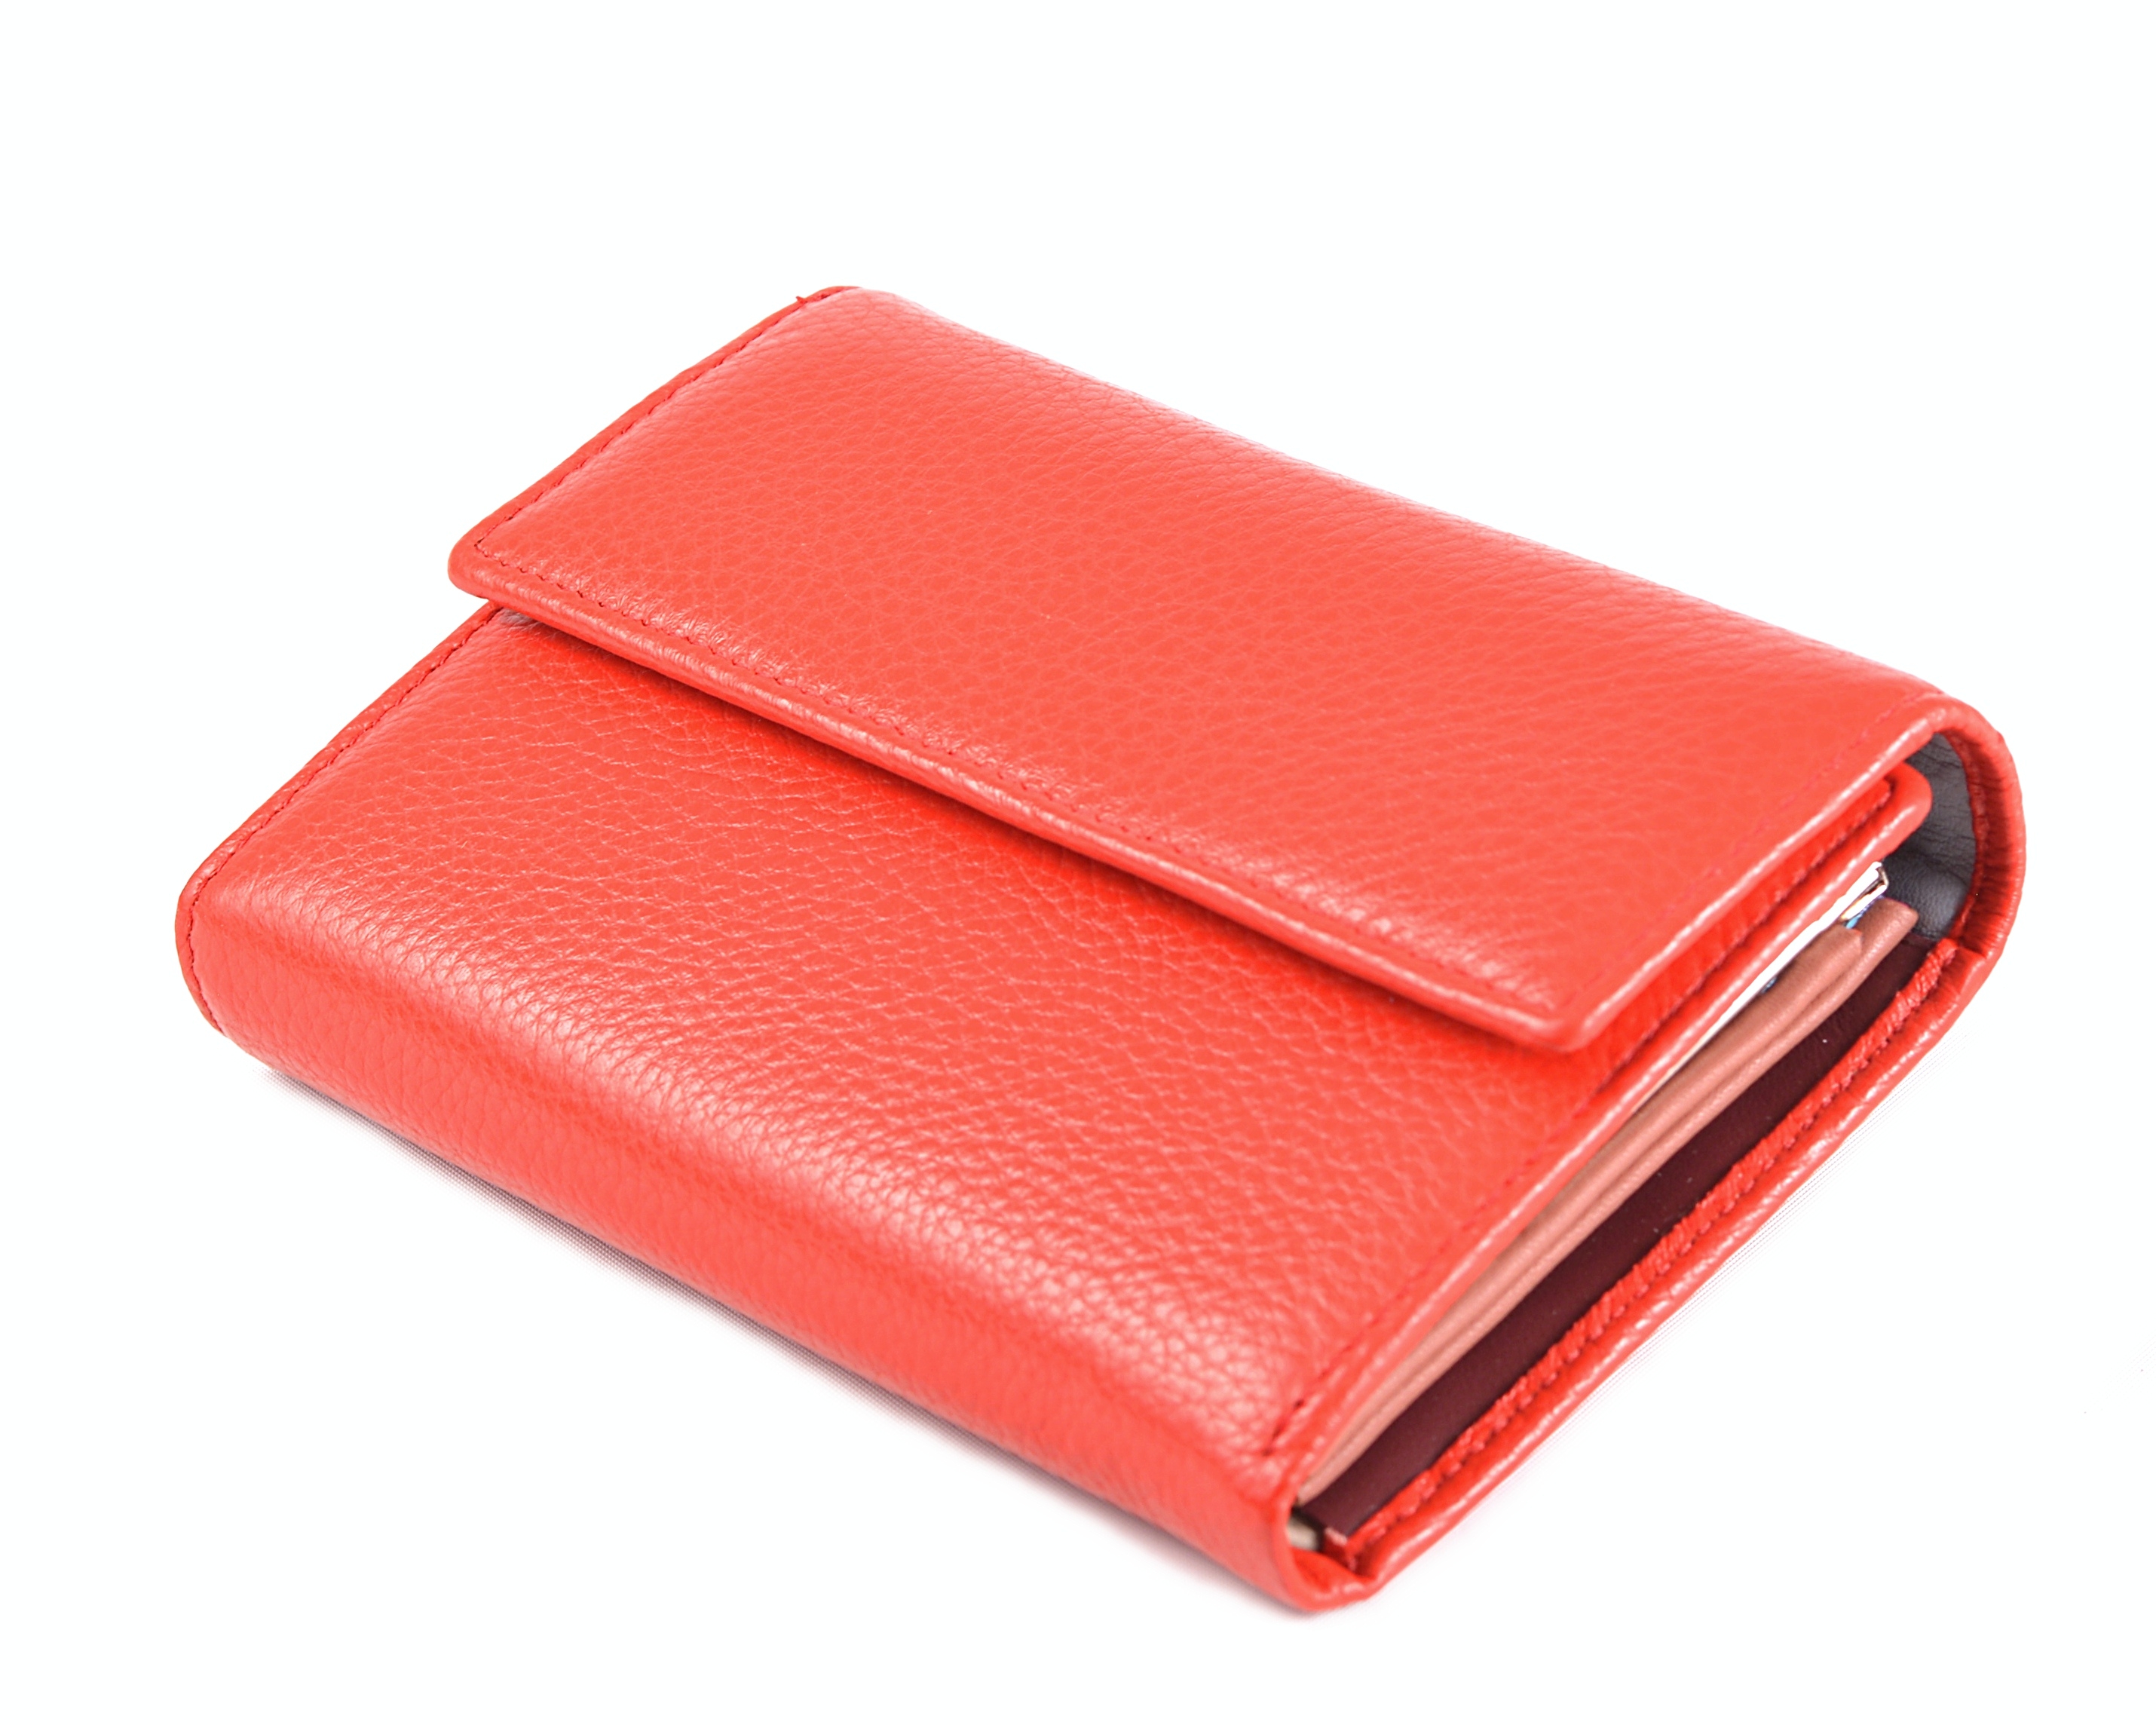 Dámská kožená peněženka s barevným vnitřkem červená, 10 x 27 x 15 (SB00-CO592-00KUZ)